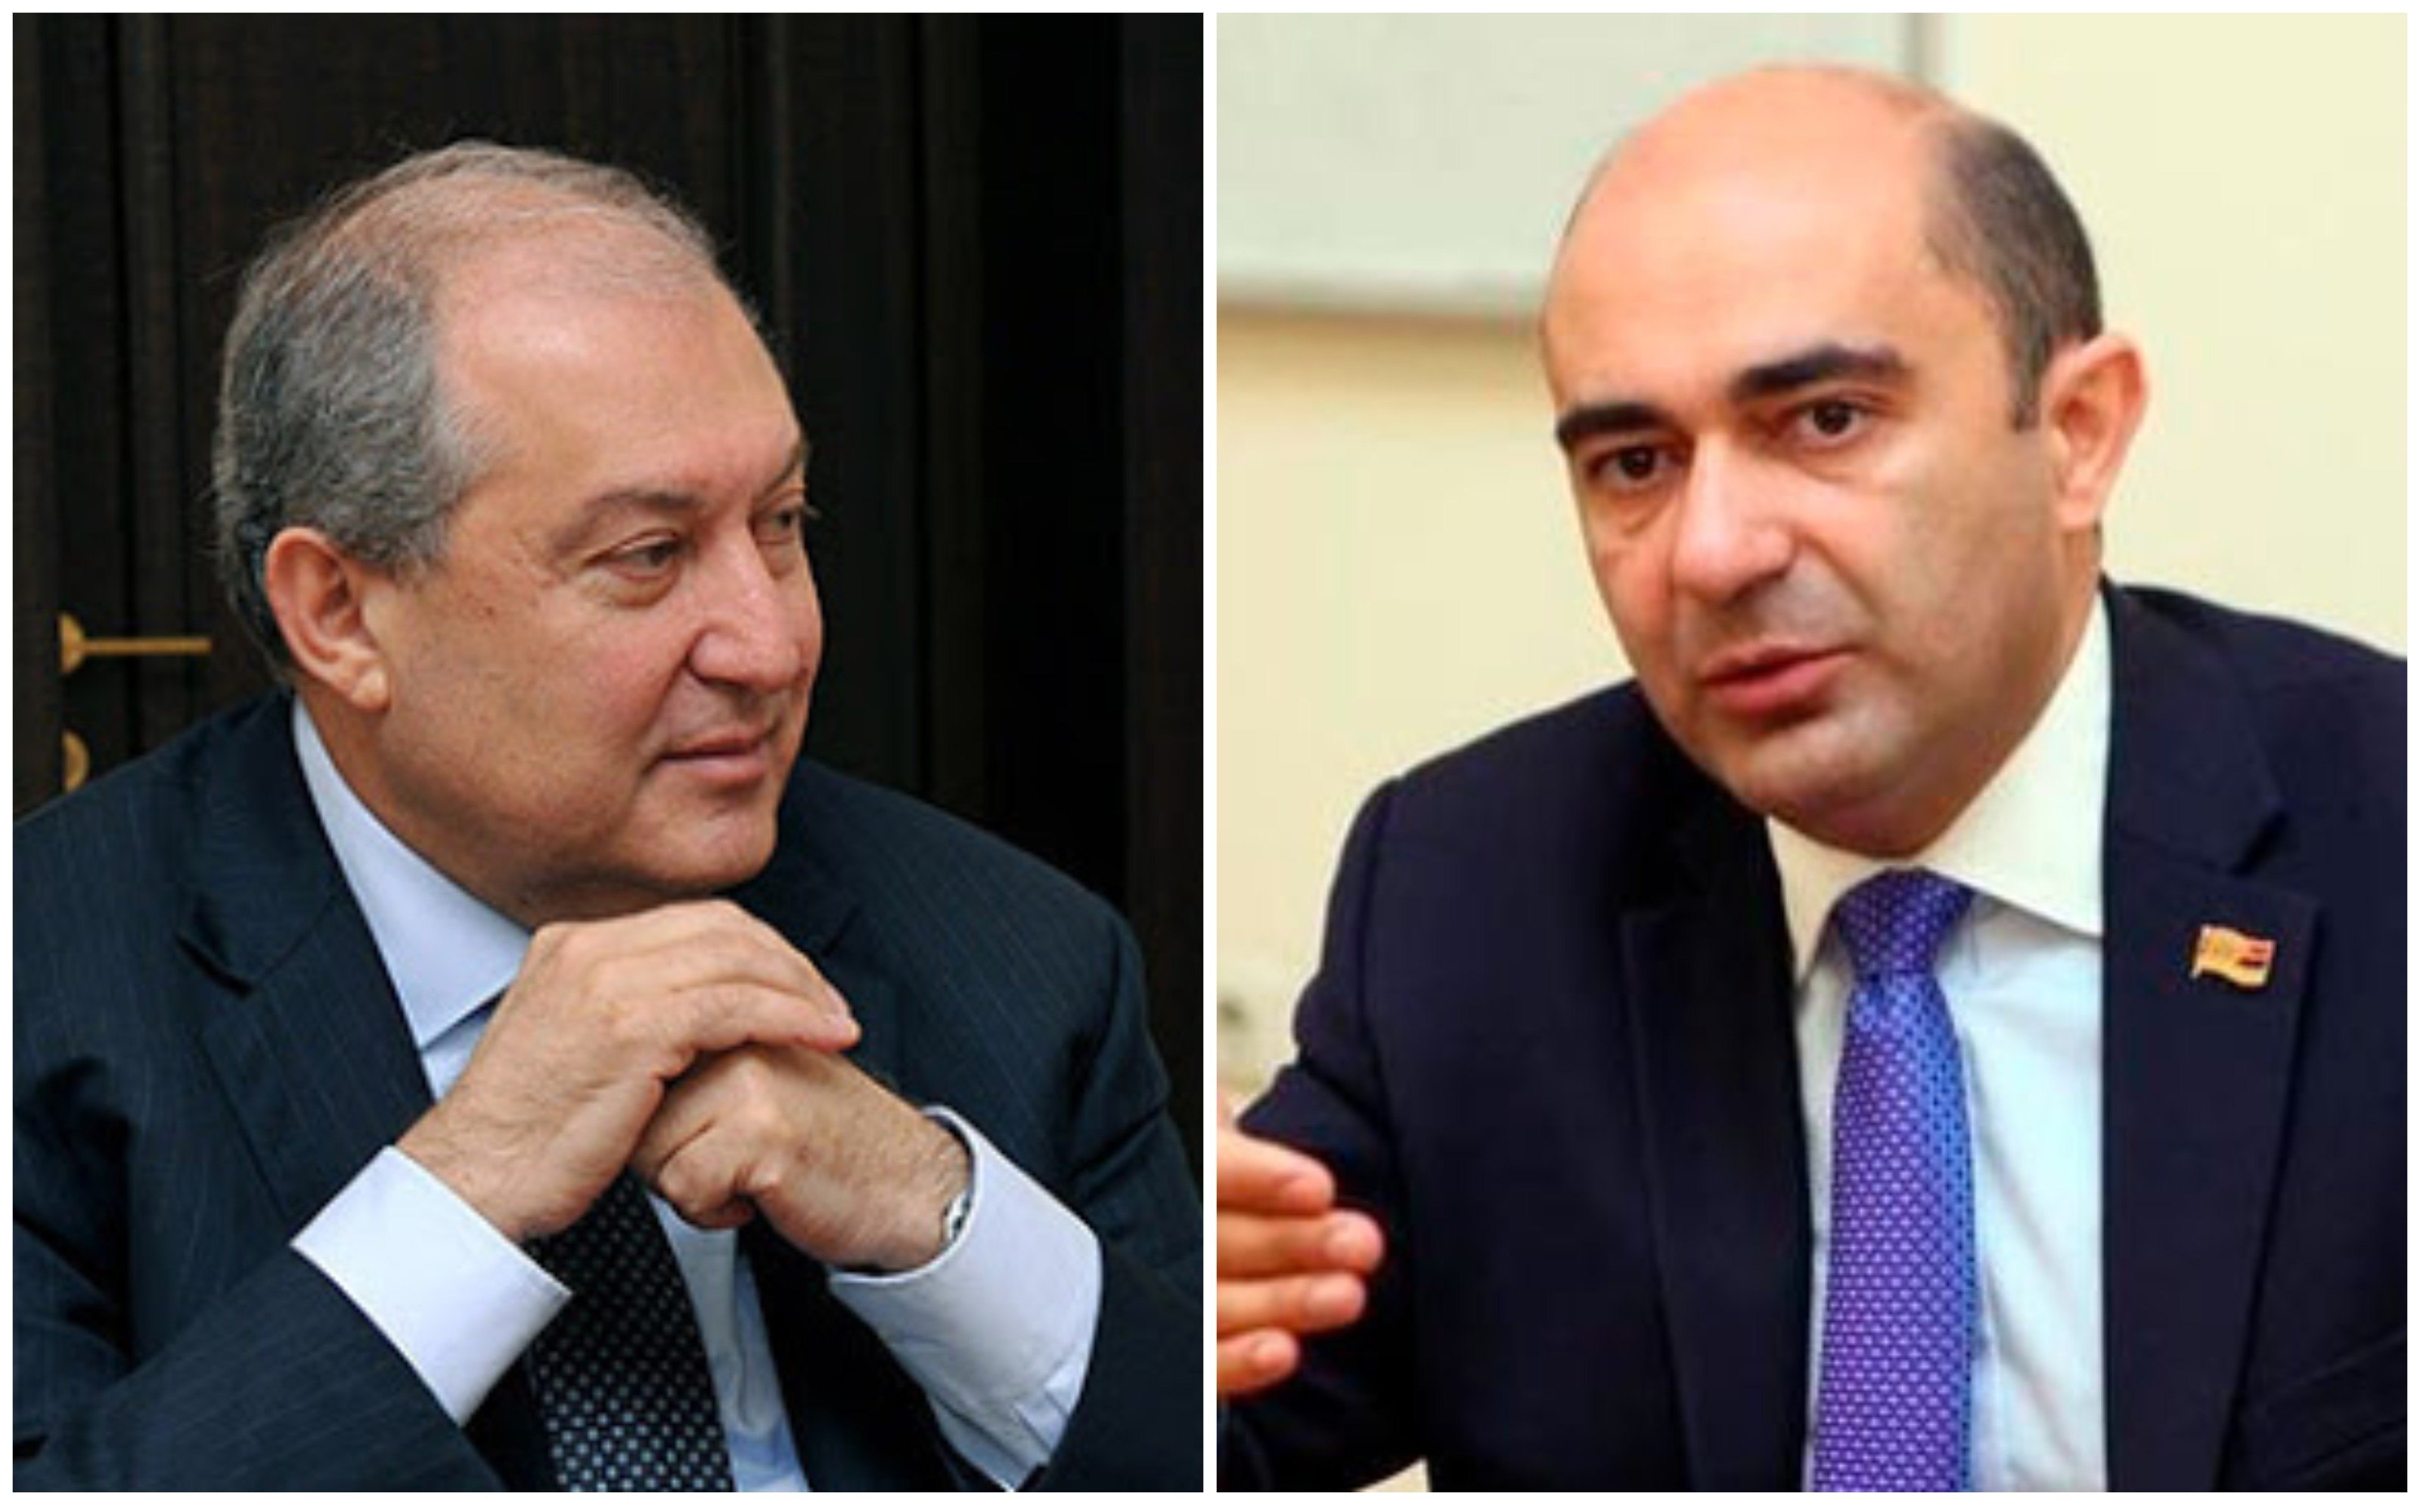 ԼՀԿ խմբակցության ղեկավար Էդմոն Մարուքյանն ու նախագահ Արմեն Սարգսյանը այսօր հանդիպելու են